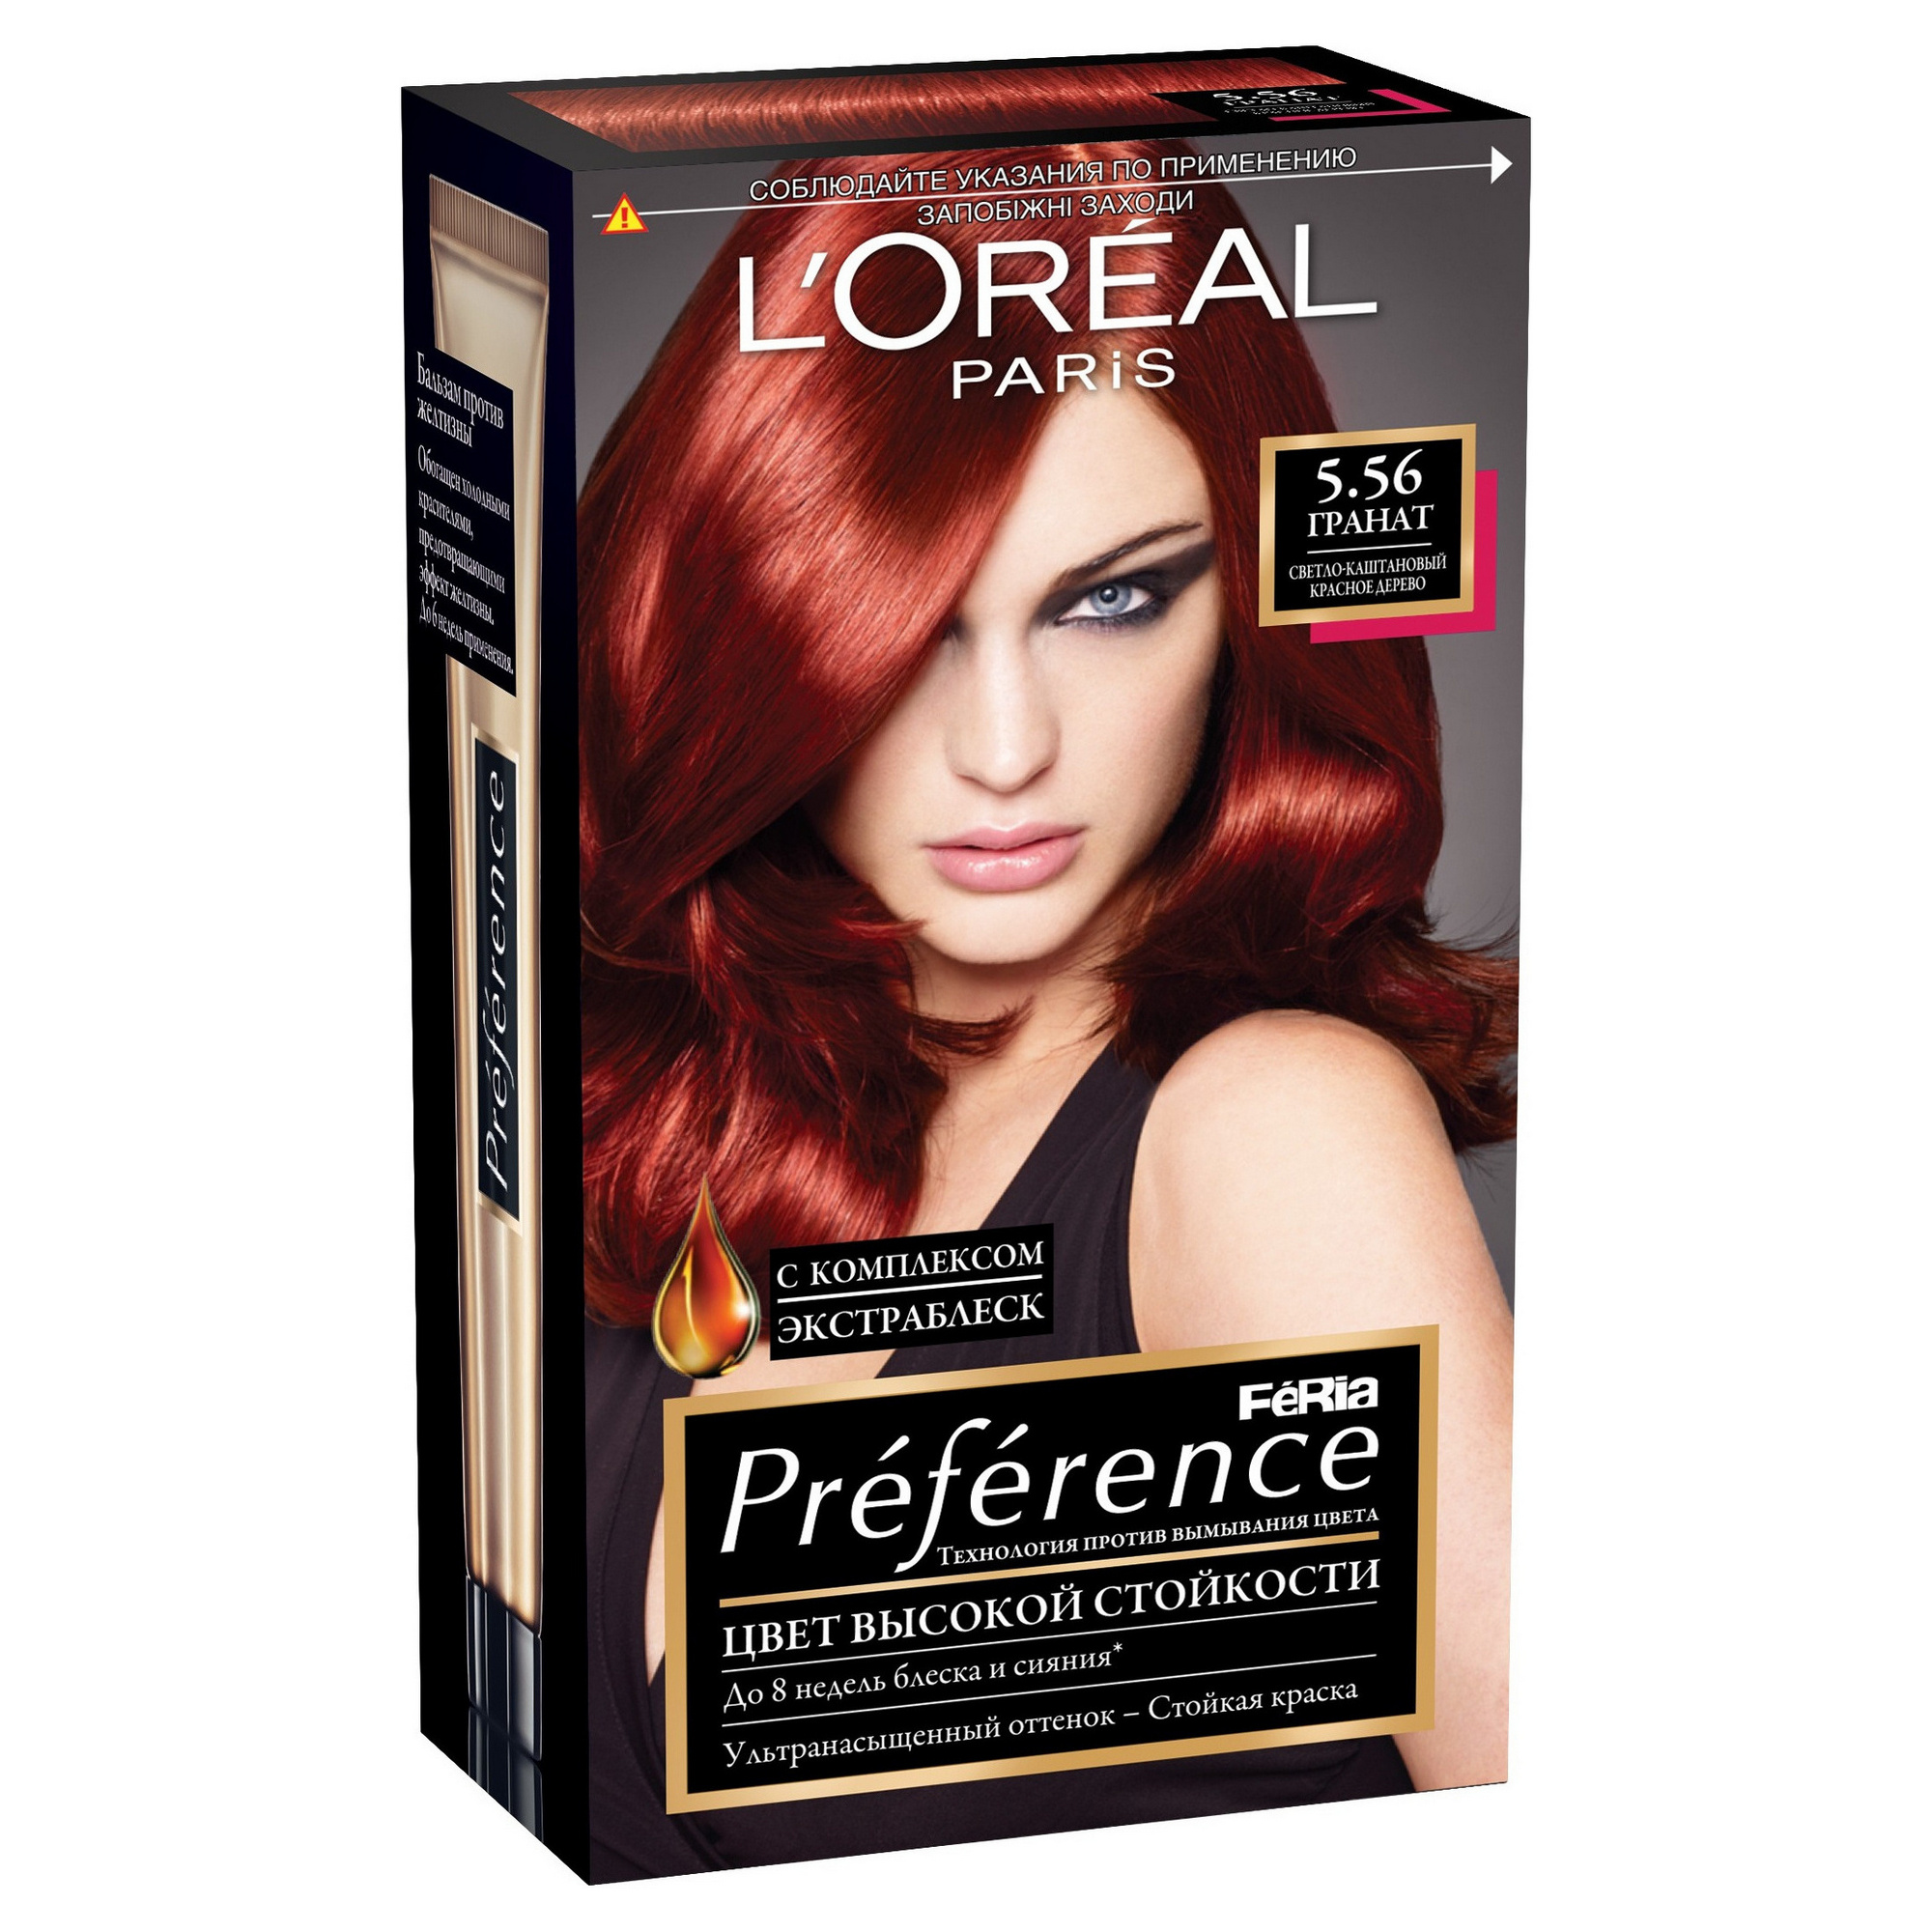 Купить Краска для волос L`Oreal Paris Preference, оттенок 5.56 Гранат, L'Oreal Paris